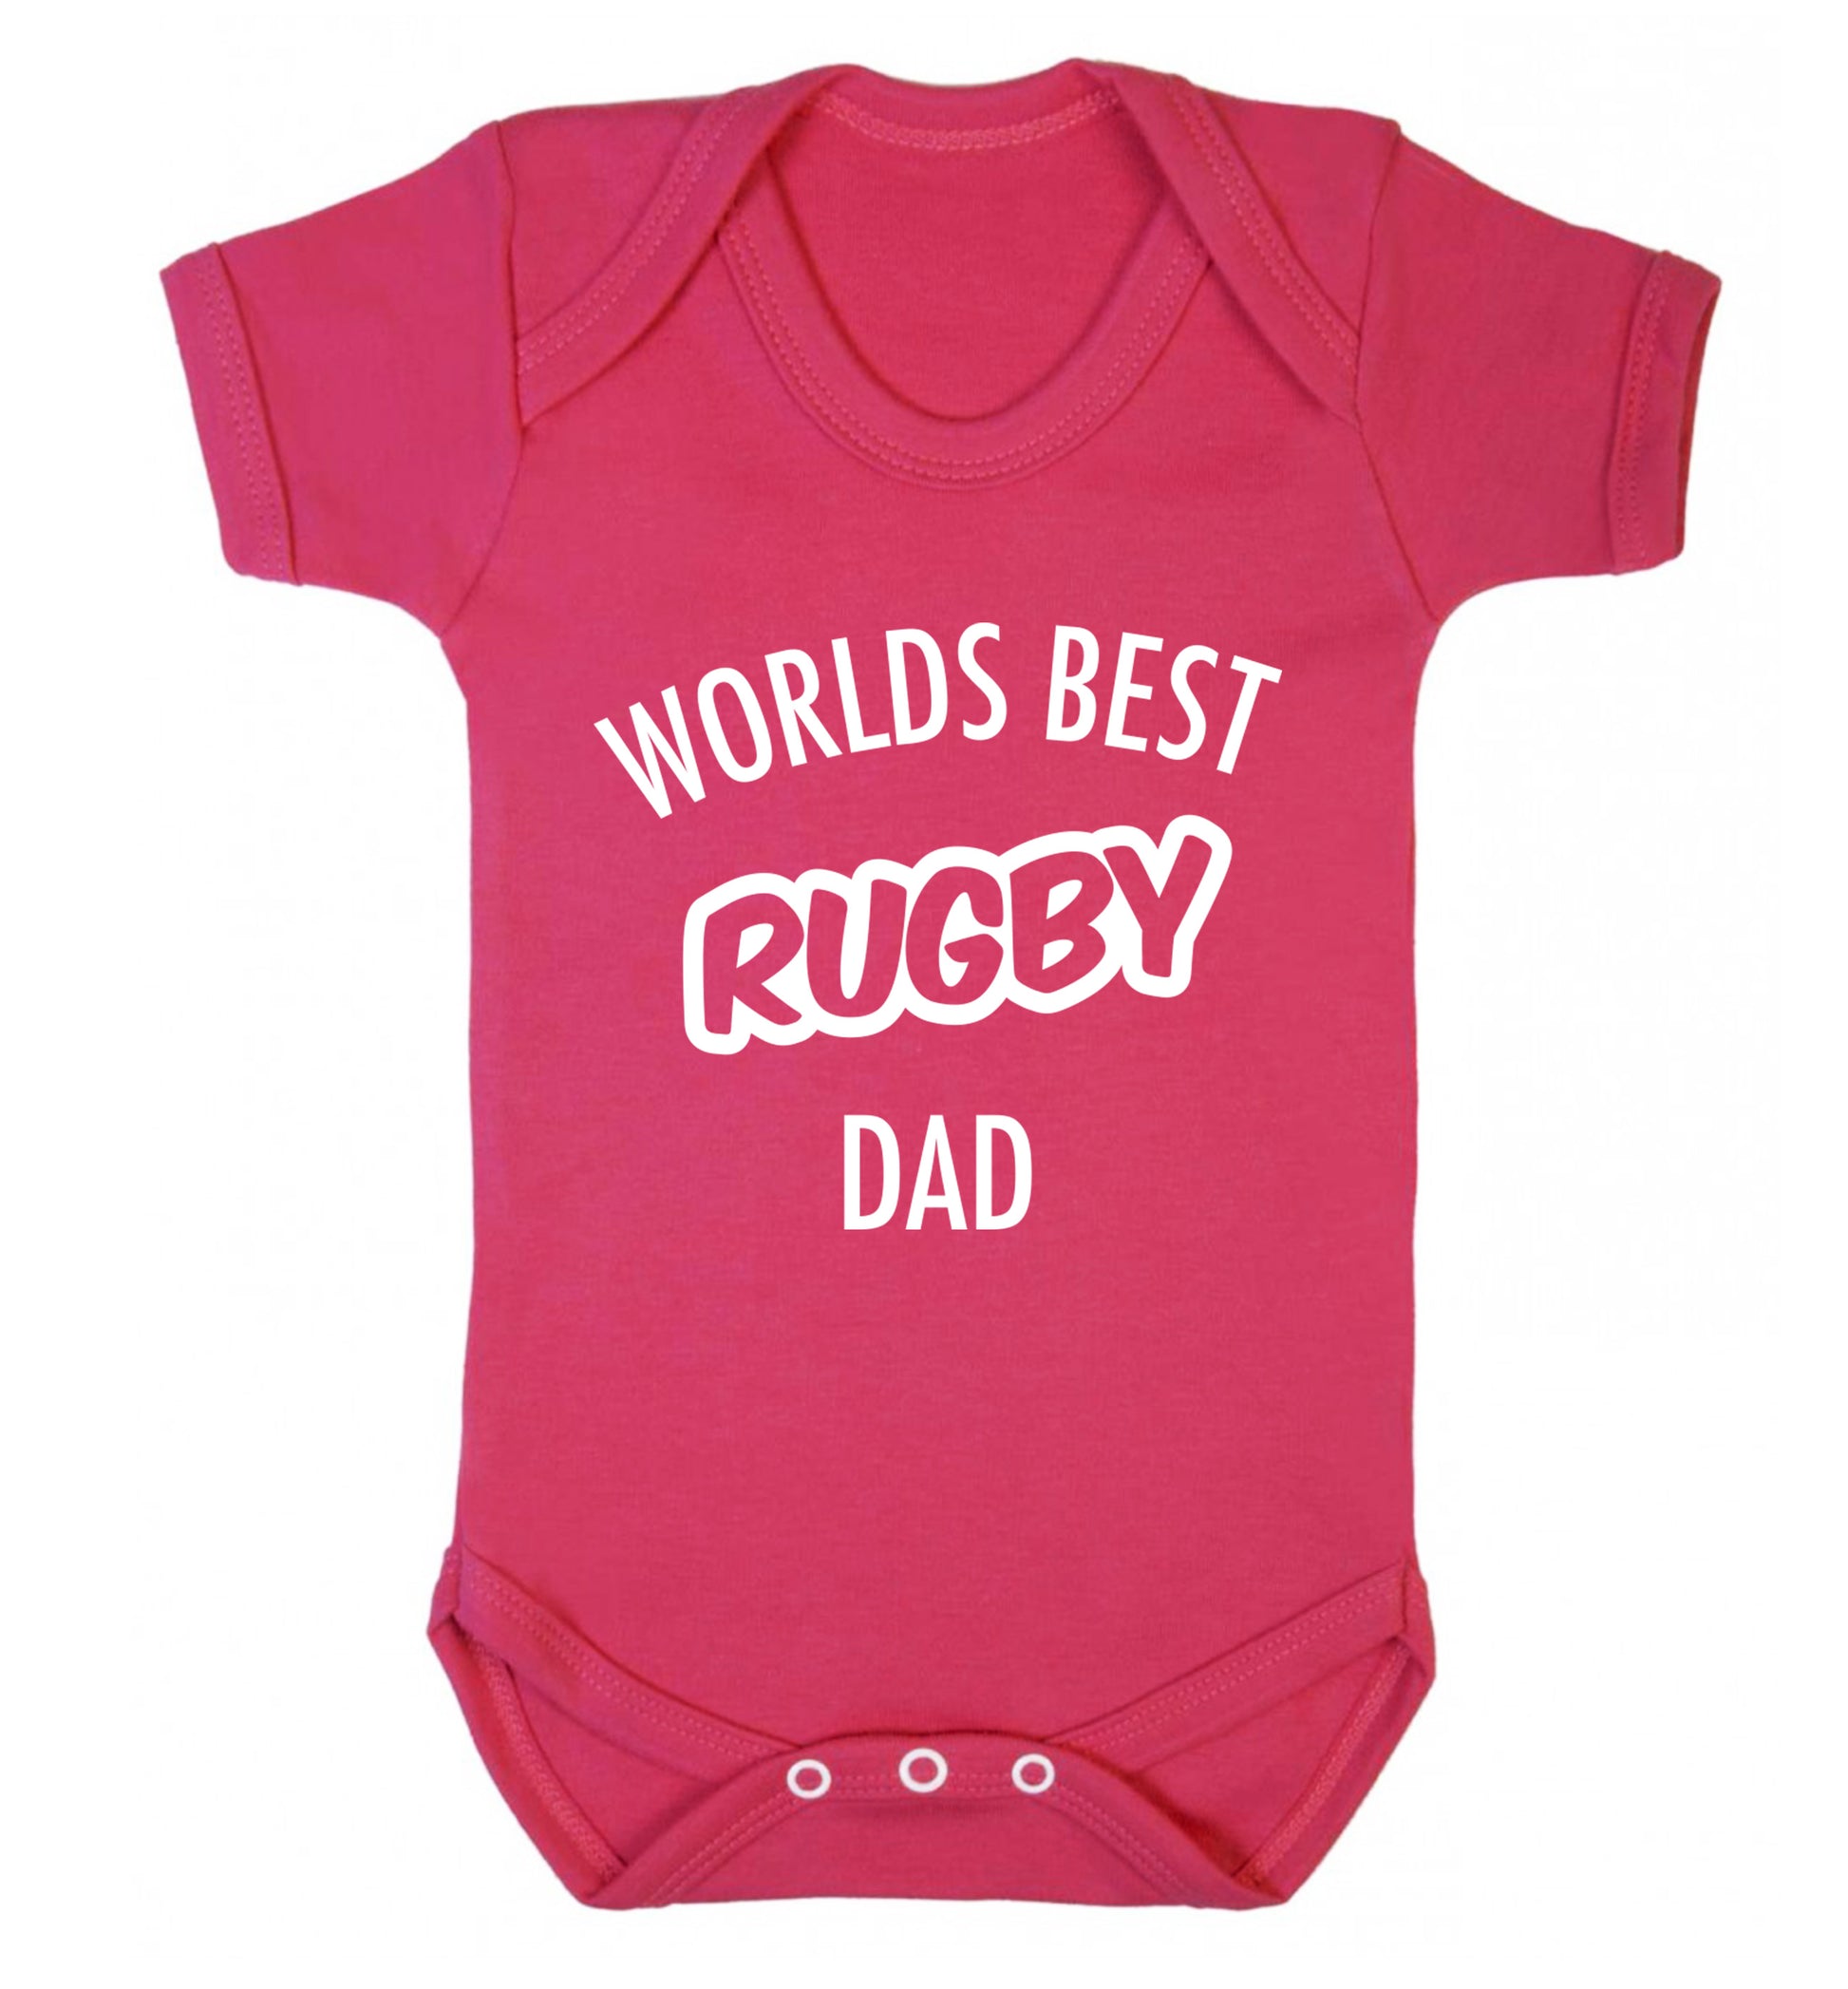 Worlds best rugby dad Baby Vest dark pink 18-24 months